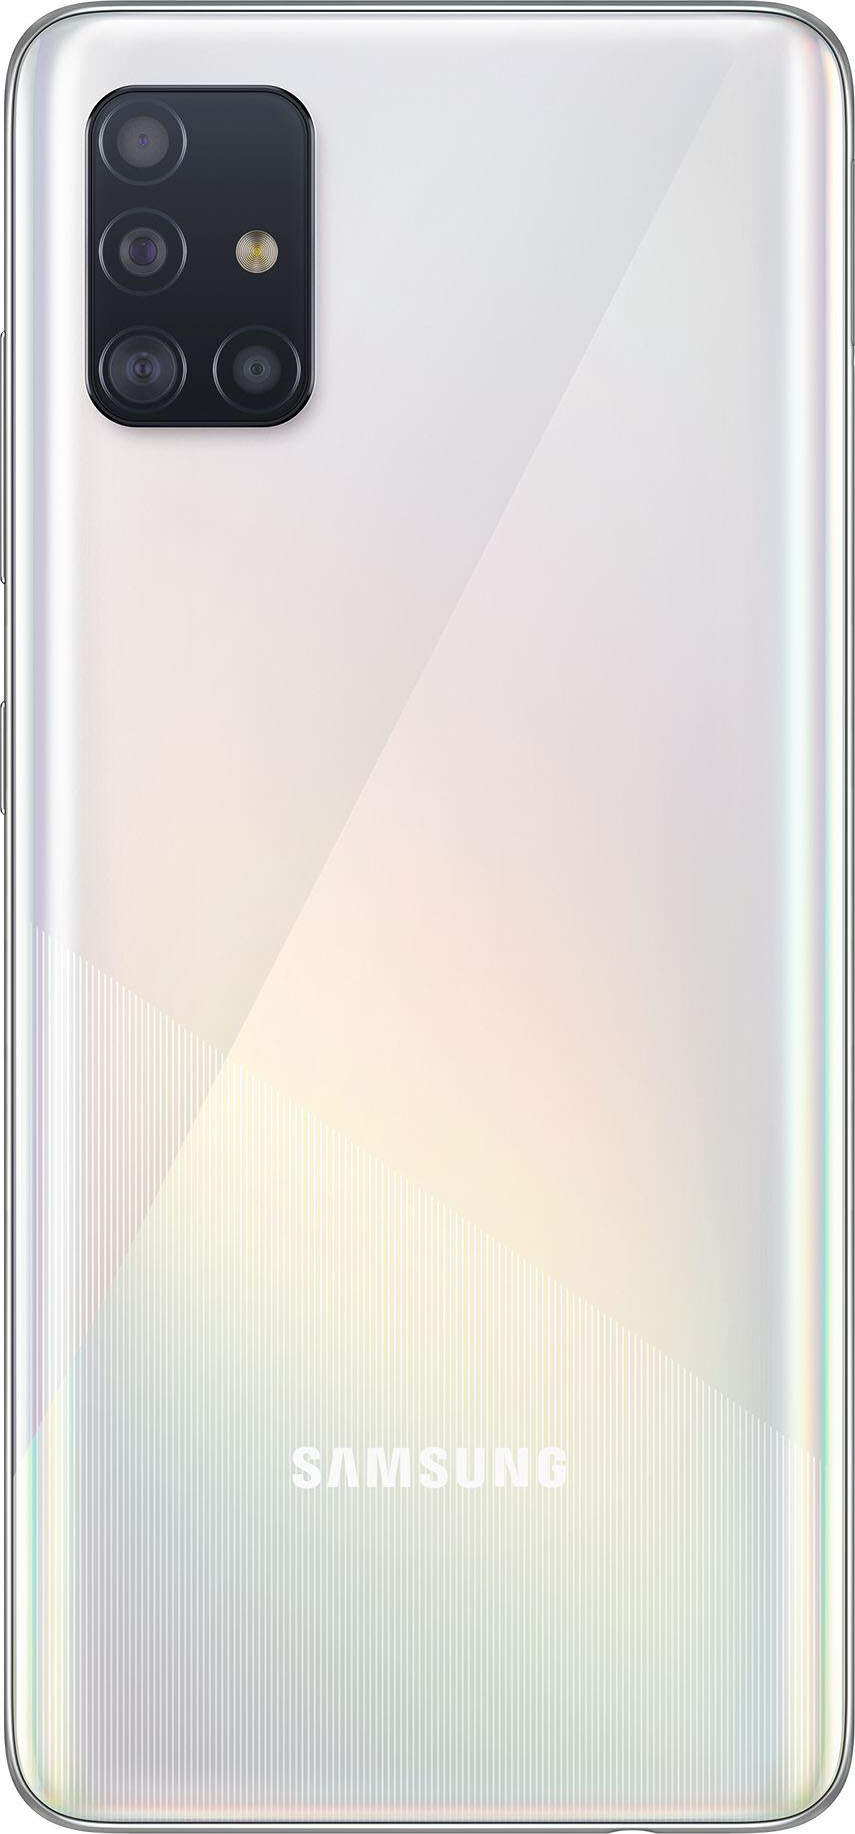 Смартфон Samsung Galaxy A51 6/128GB (ЕАС) Prism Crush White (Белый)